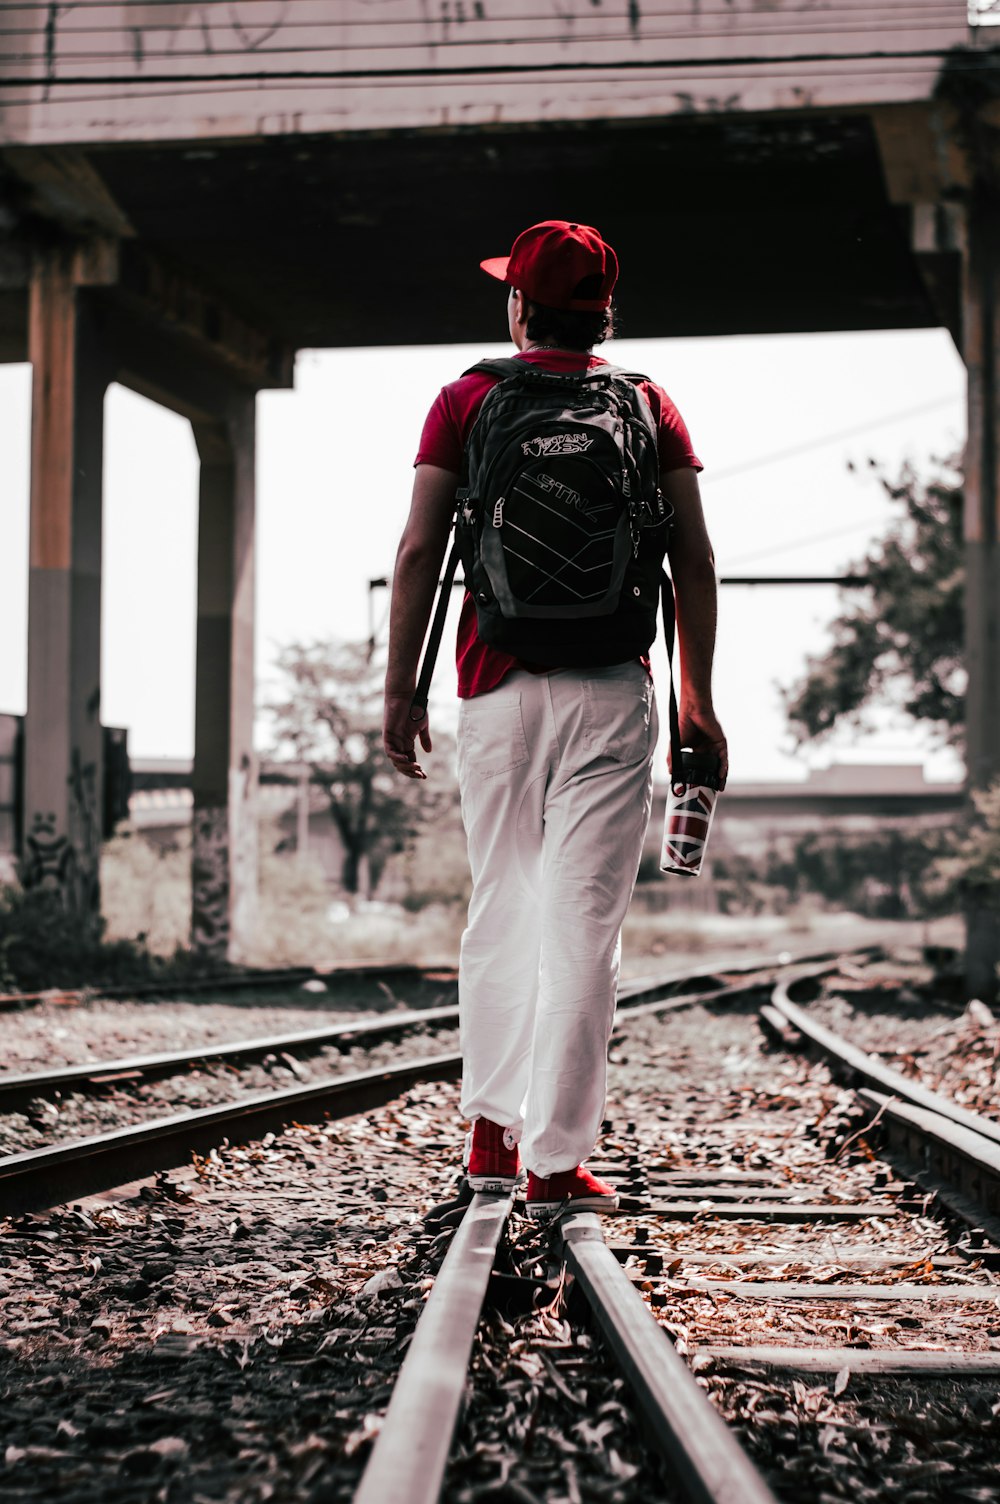 homem na mochila vermelha e preta andando no trem ferroviário durante o dia